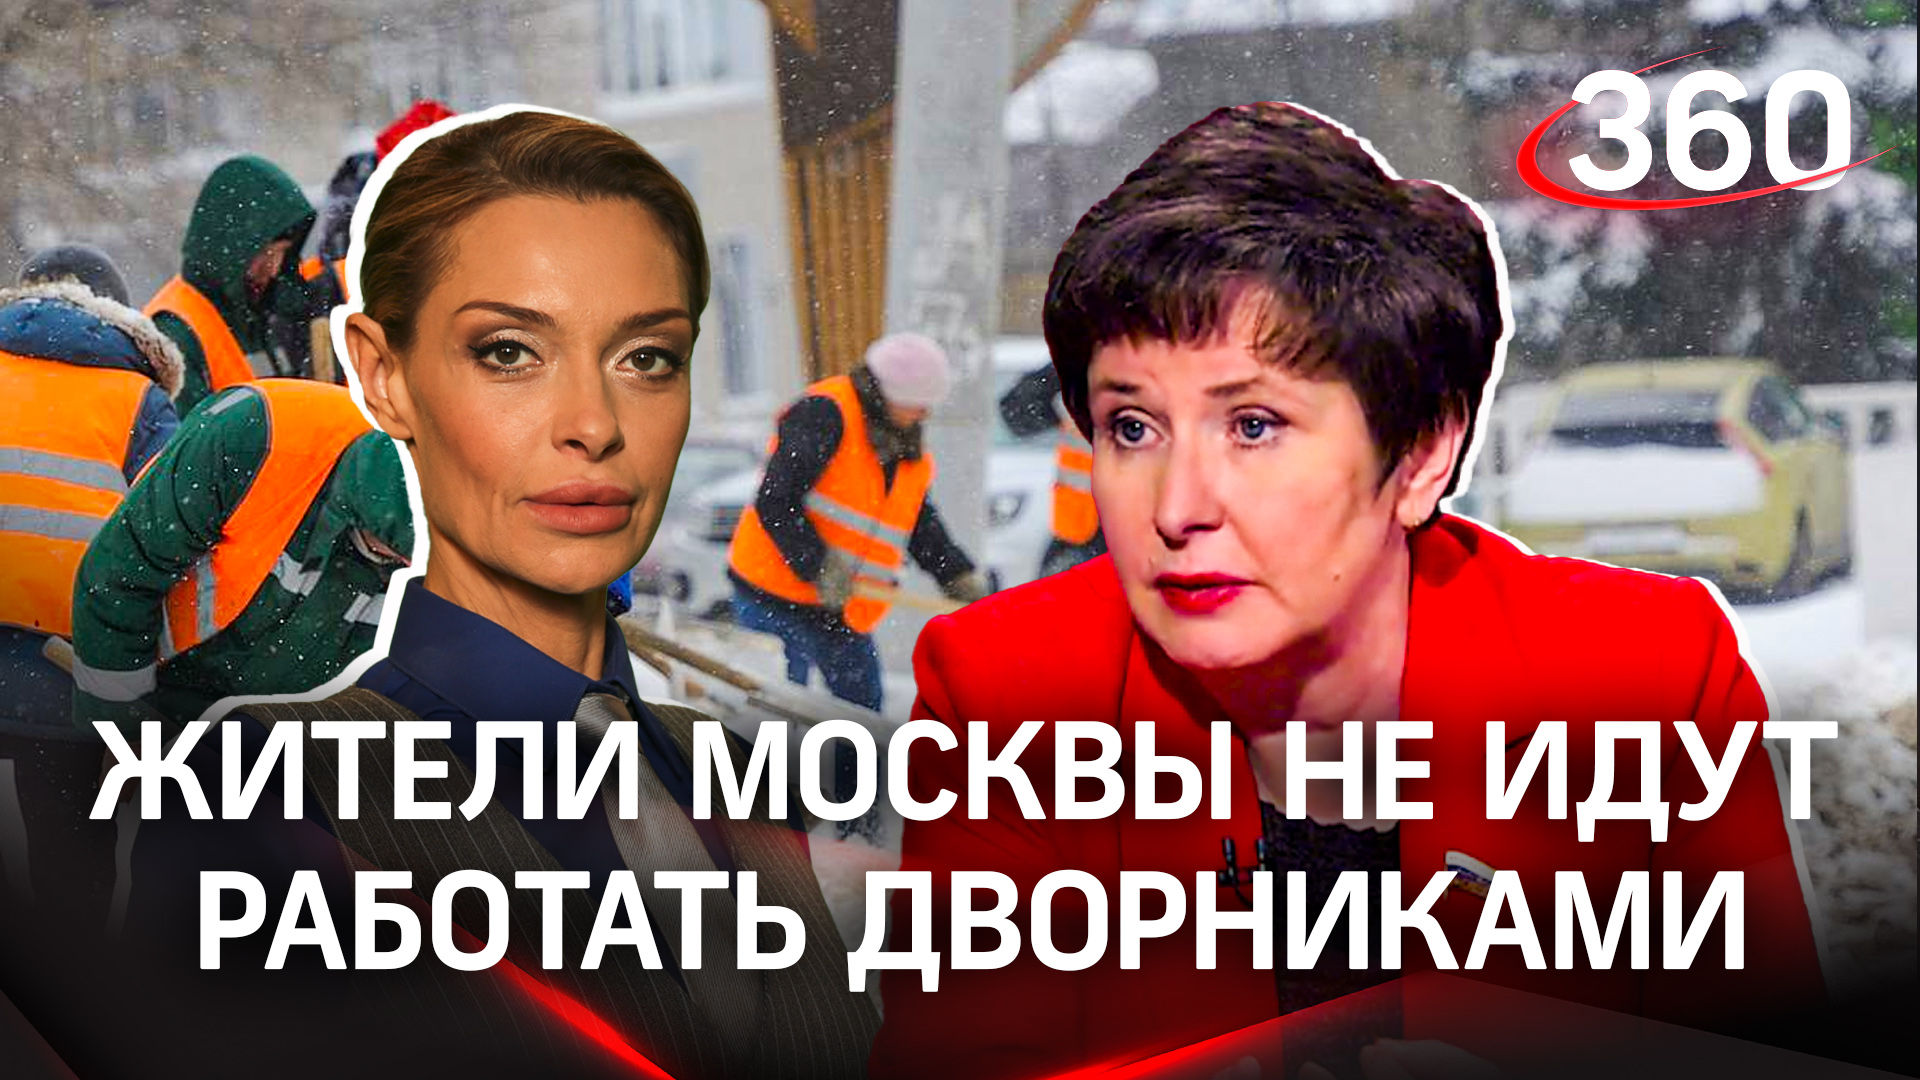 Светлана Разворотнева: «Жители Москвы не идут работать дворниками»|Интервью с Аксиньей Гурьяновой